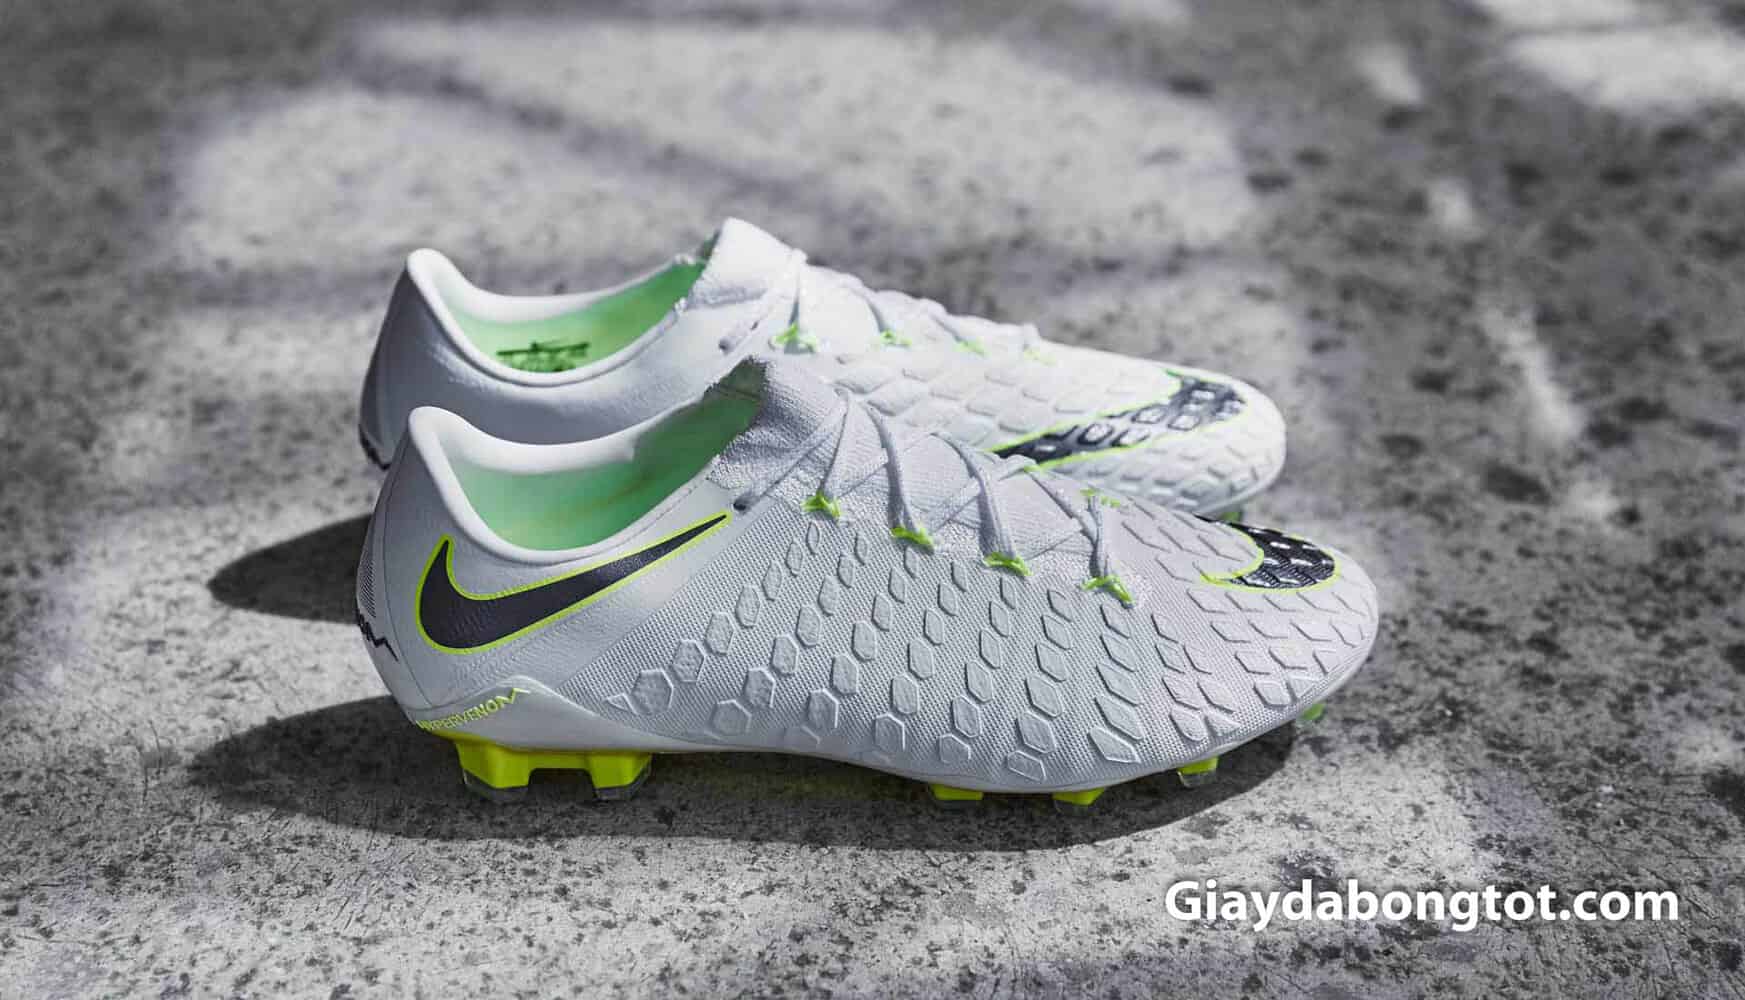 Giày Nike Hypervenom Phantom III được sử dụng để ghi được 13 bàn thắng tại Worldcup 2018